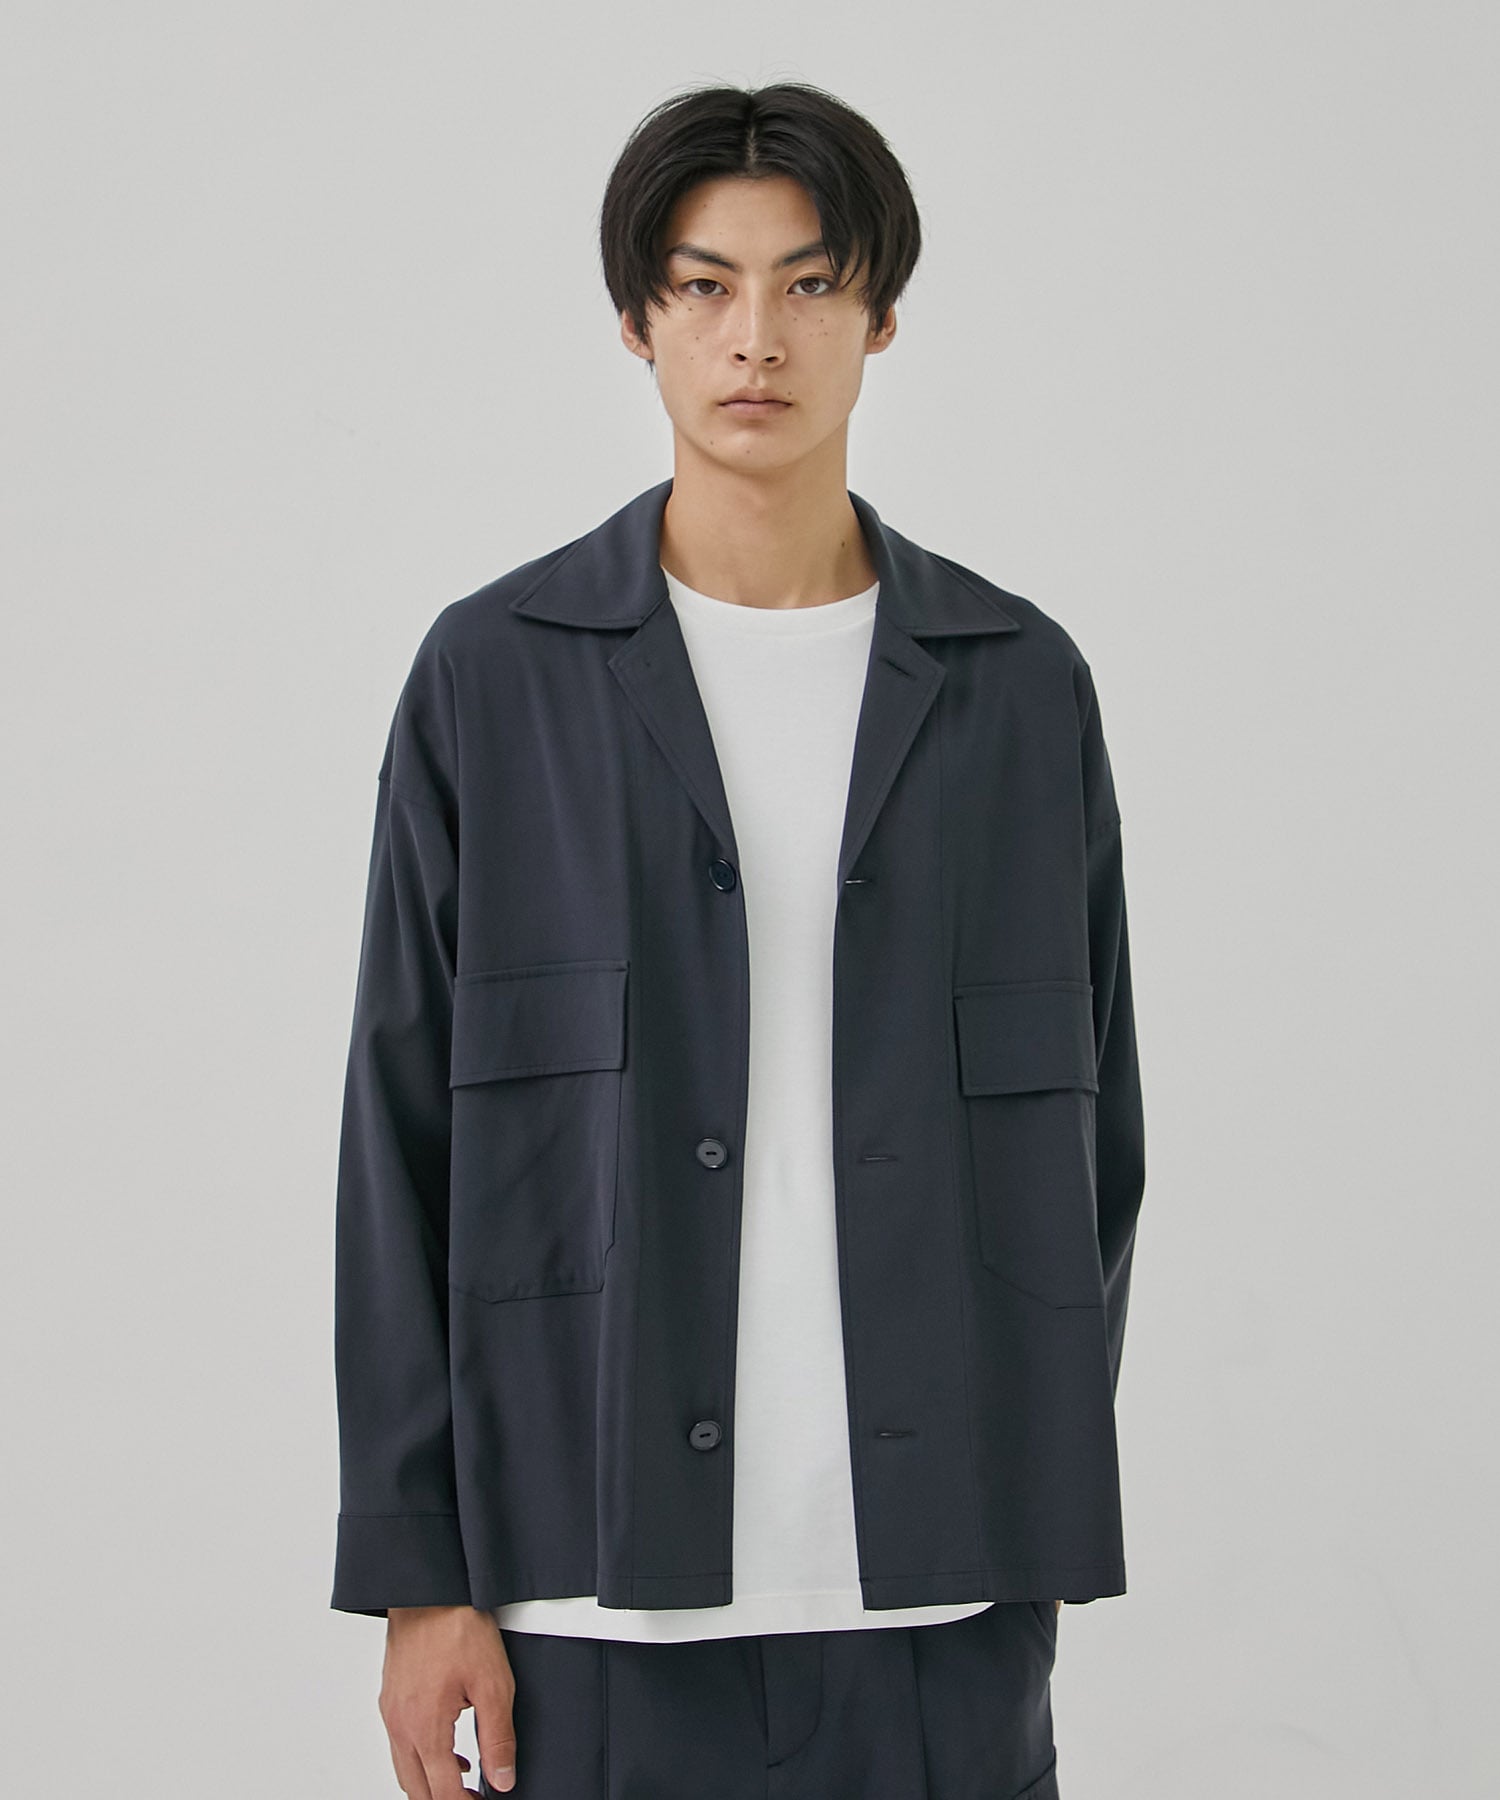 キュプラCPOシャツジャケット | PUBLIC TOKYO